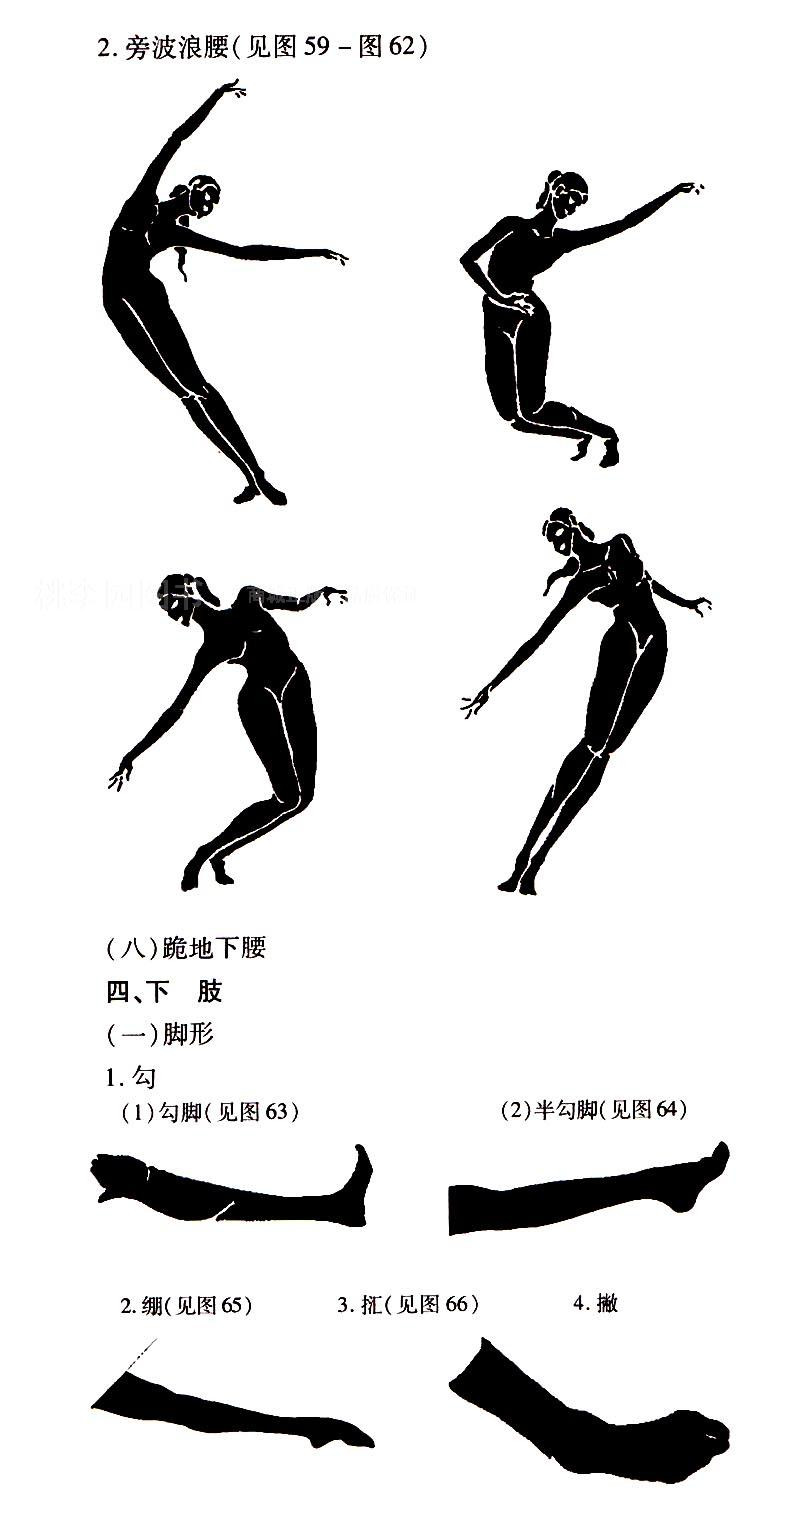 【桃李园图书】中国古典舞基本功训练教程(舞